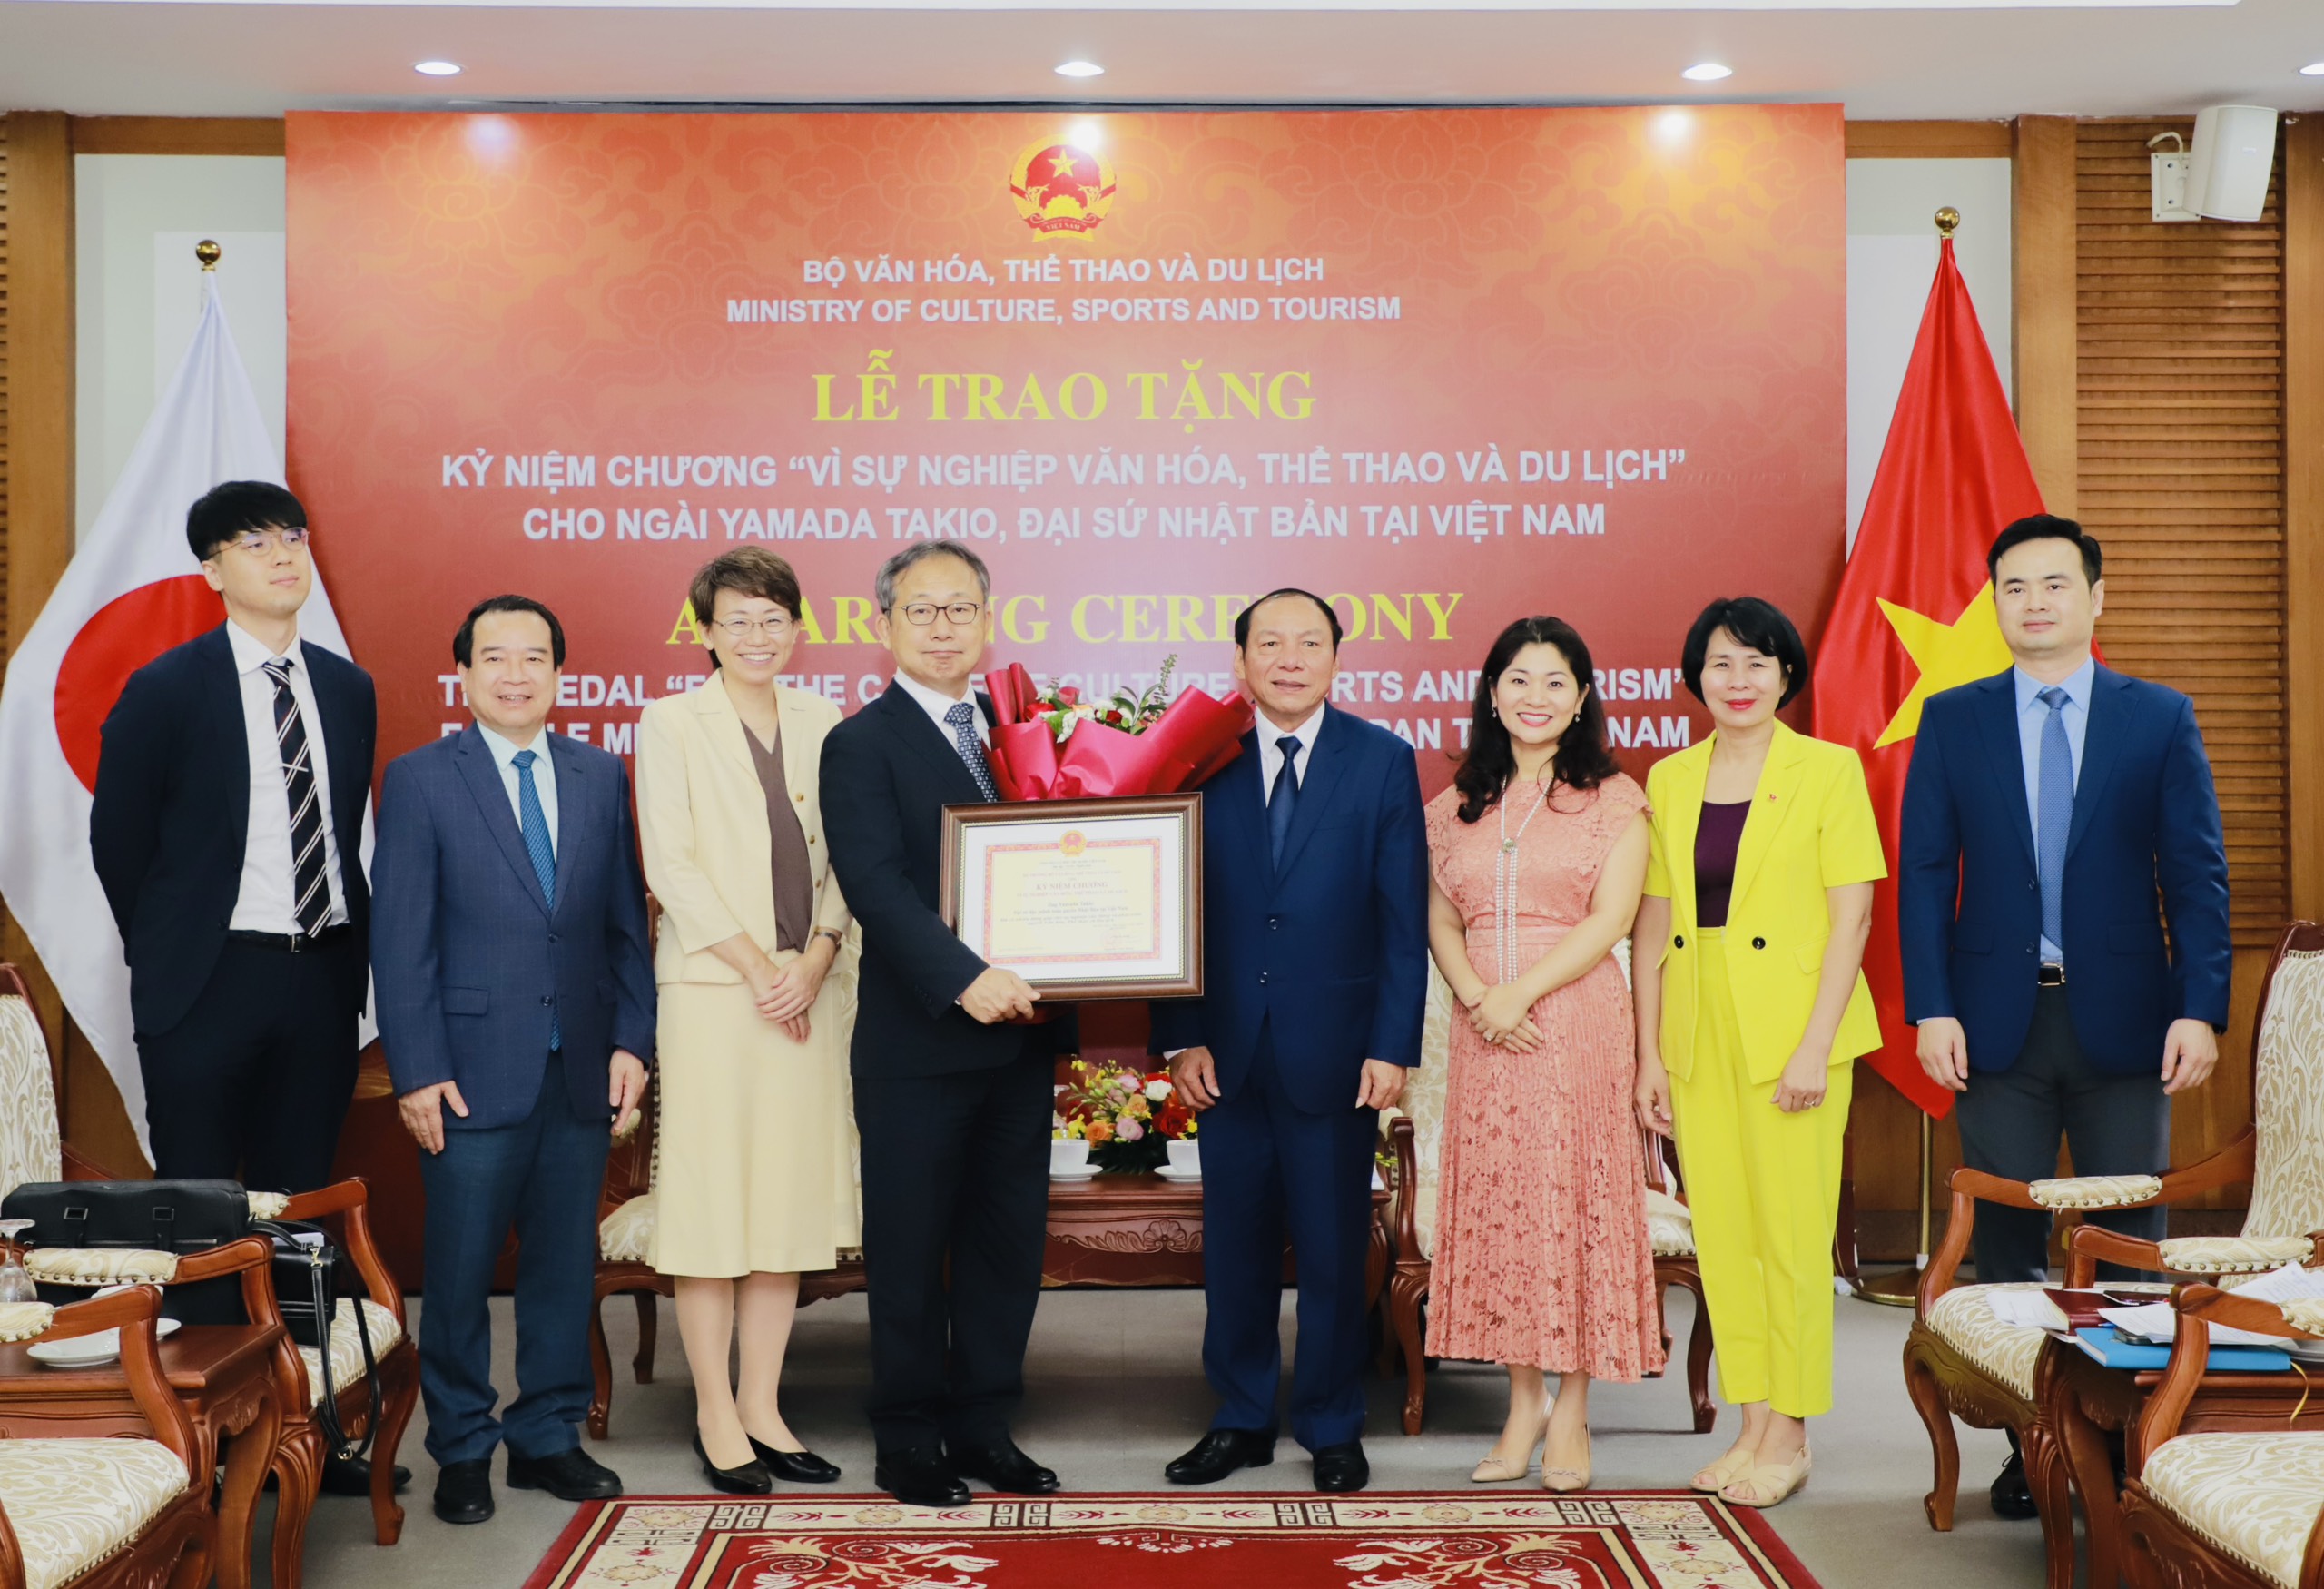 Bộ trưởng Nguyễn Văn Hùng: Đề cao sự tương đồng văn hóa để xây dựng mối quan hệ tốt đẹp, nhân lên khát vọng hòa bình - Ảnh 5.